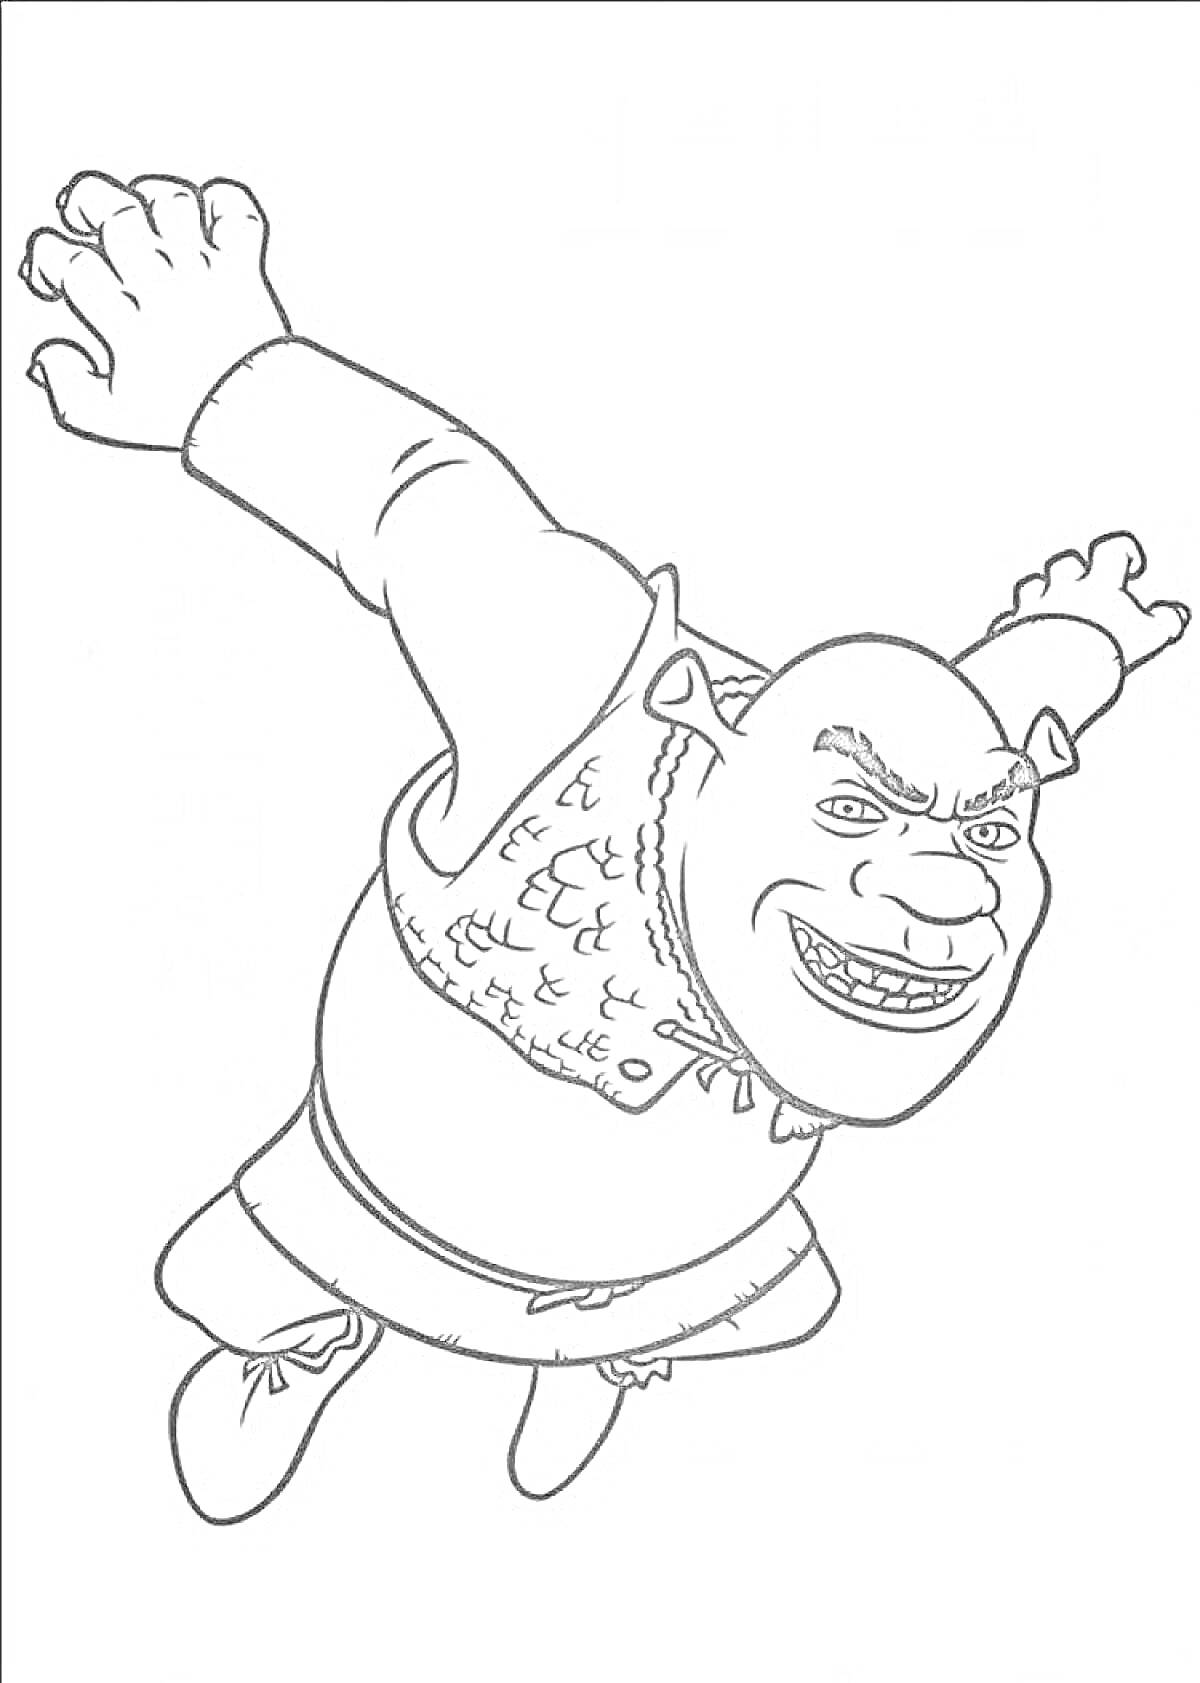 Раскраска Шрек в прыжке с поднятыми руками